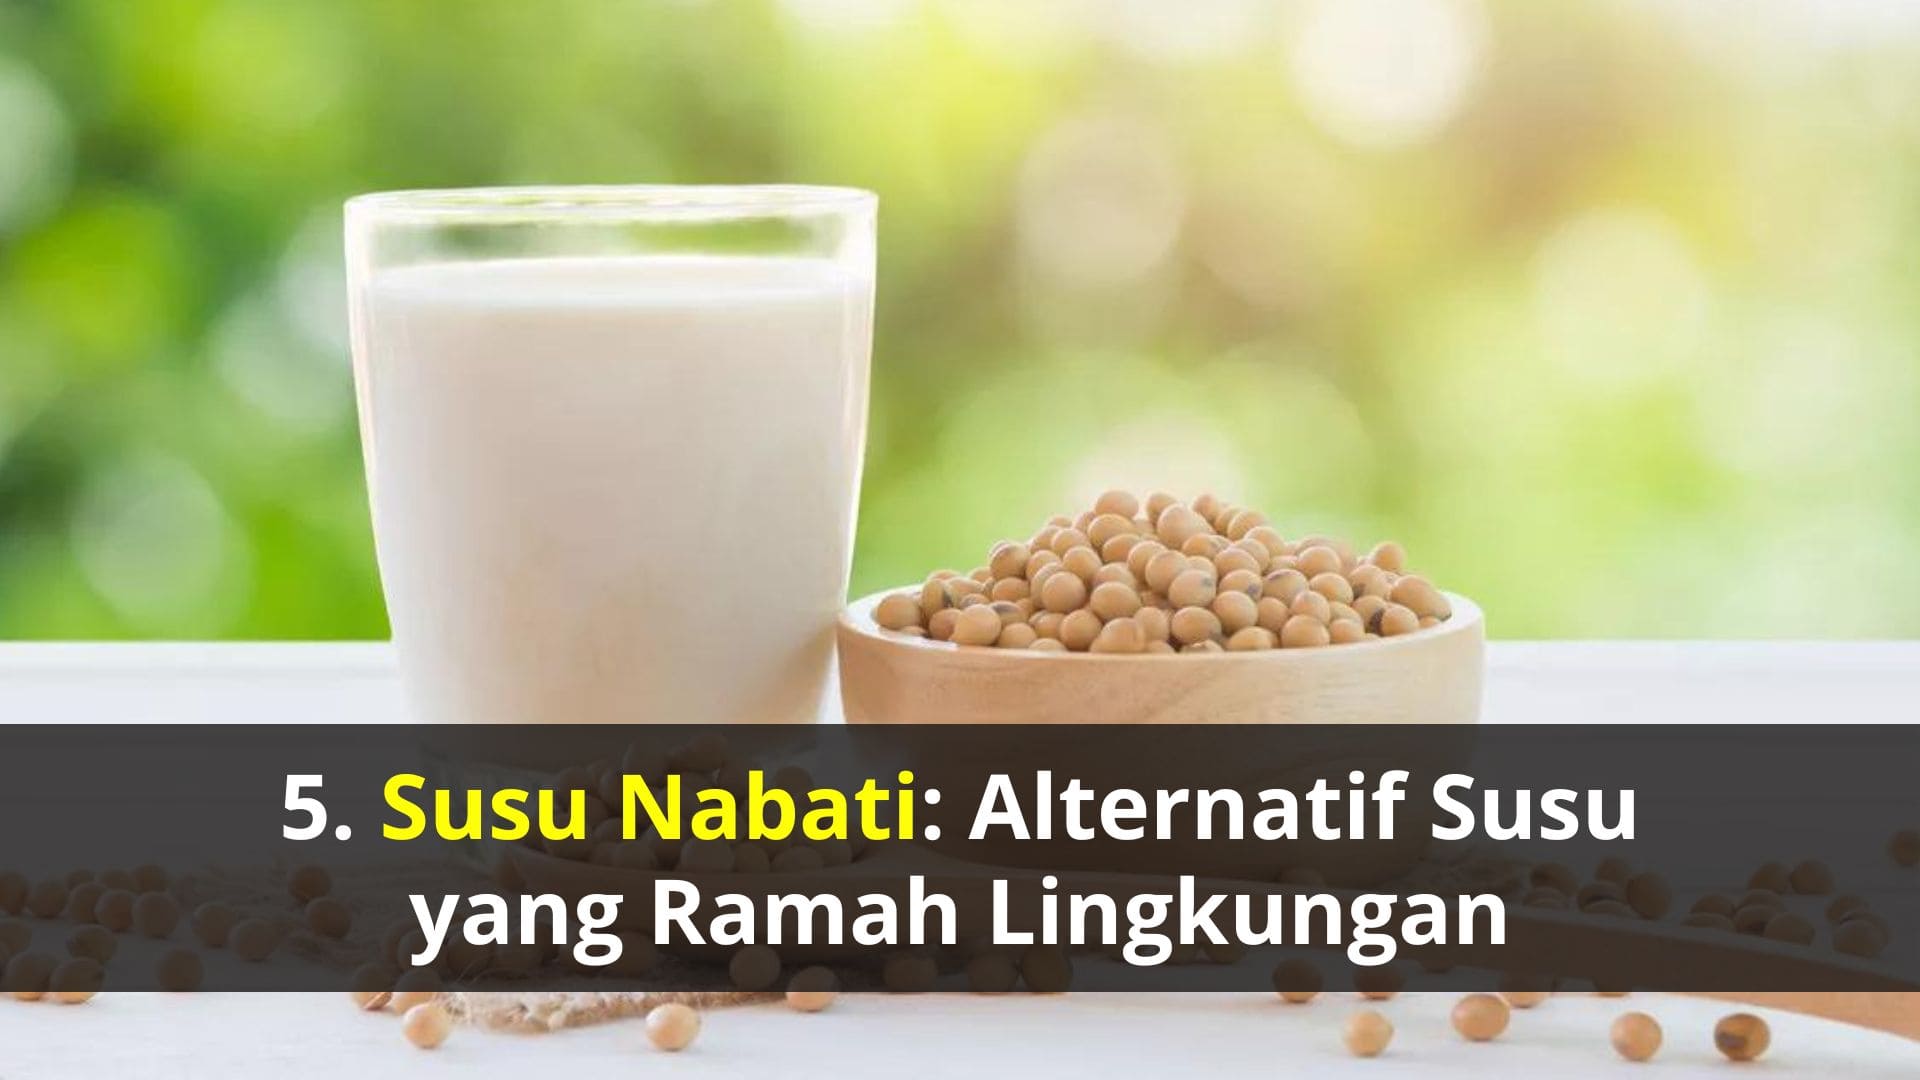 Susu Nabati: Alternatif Susu yang Ramah Lingkungan